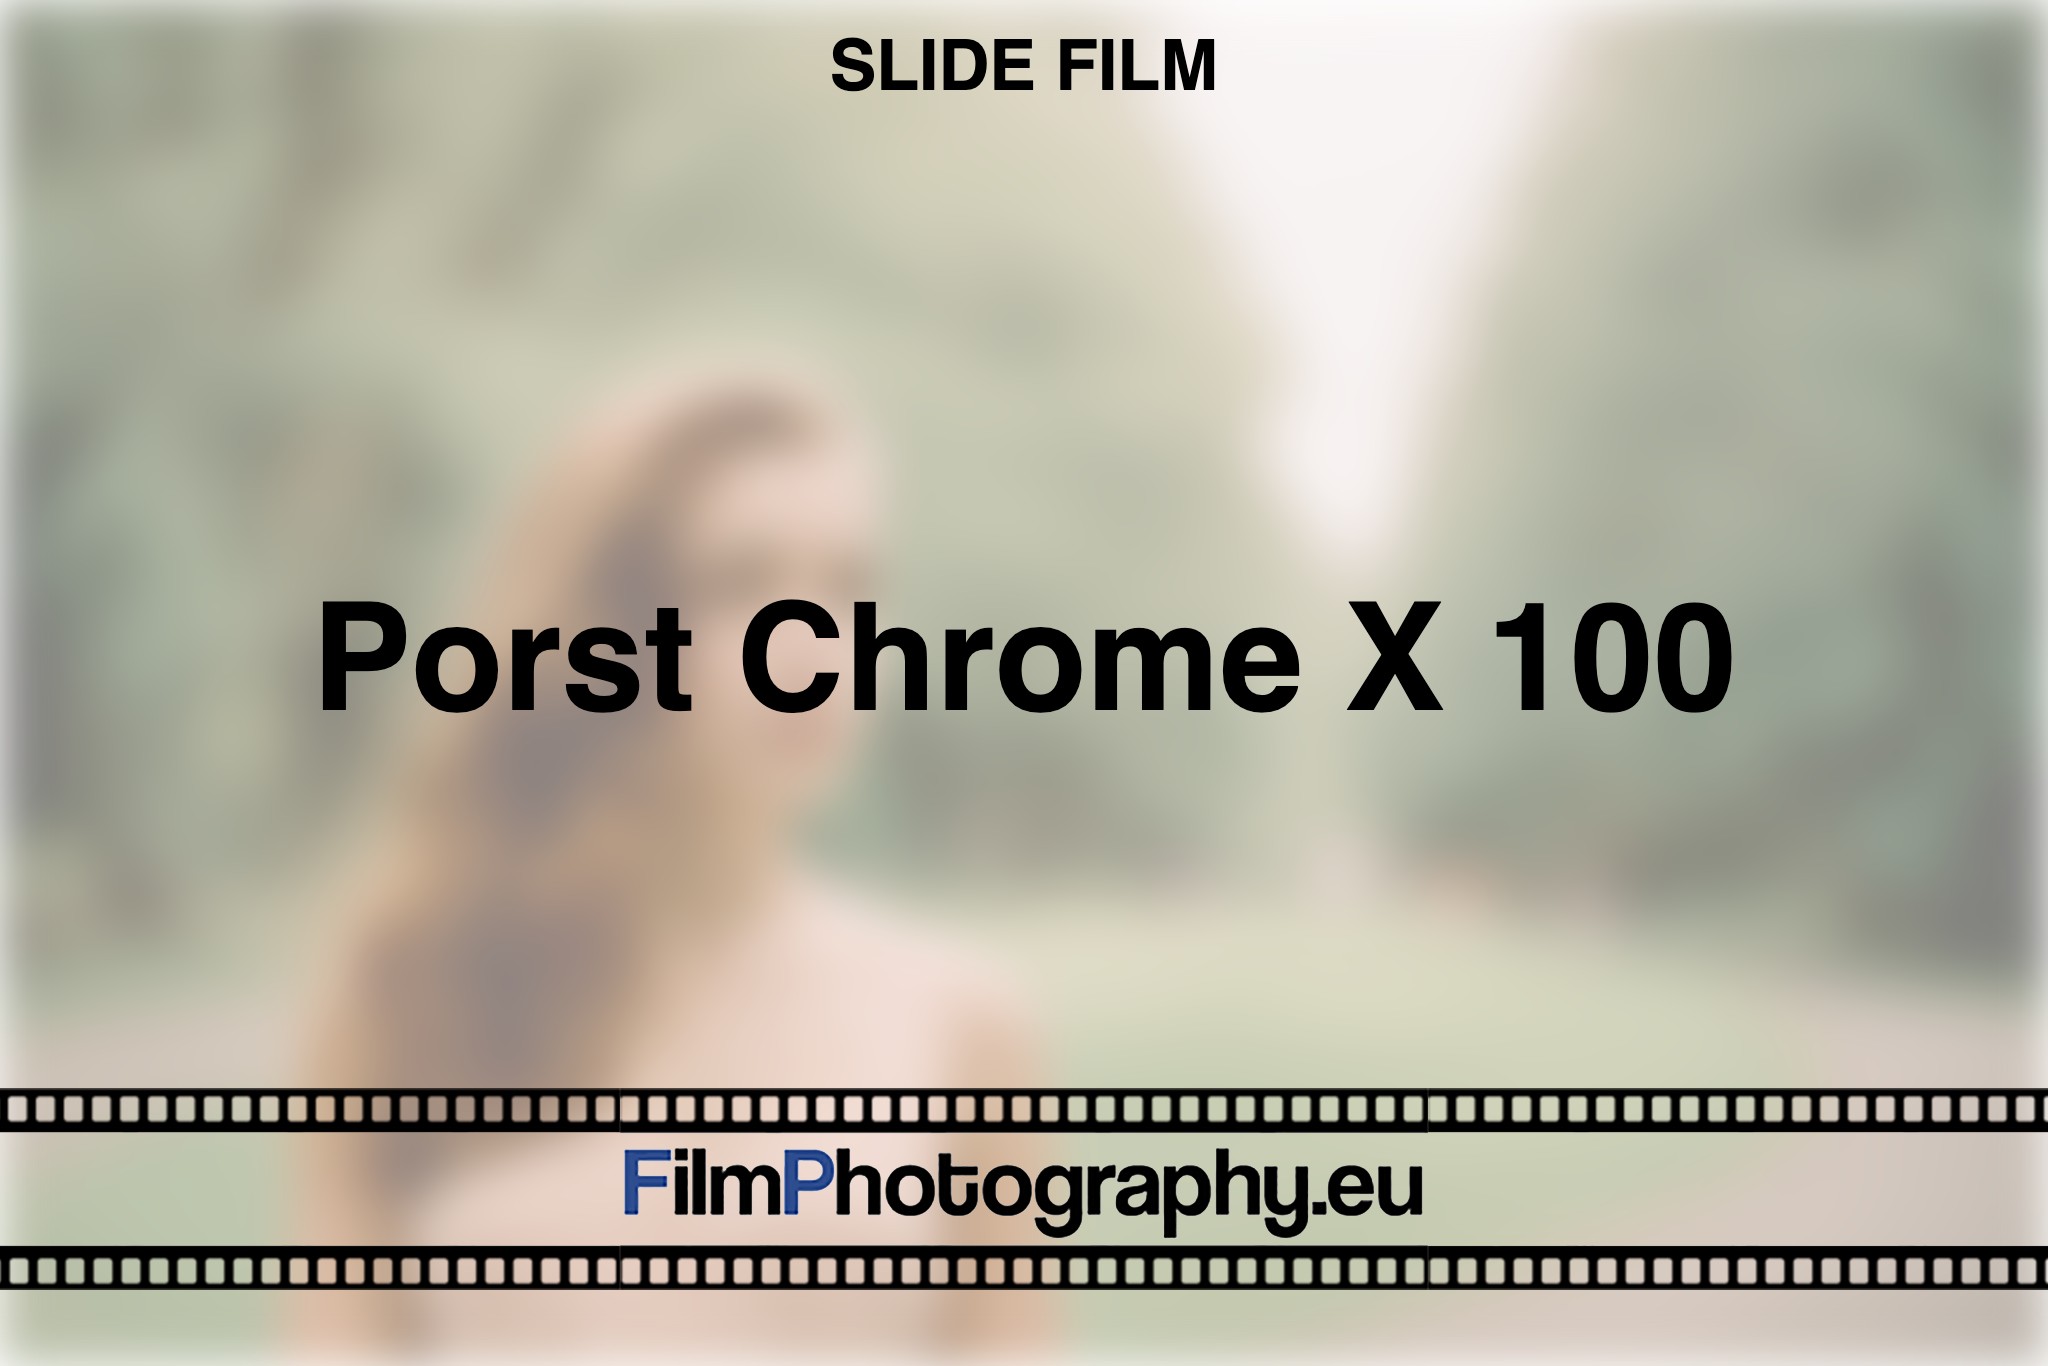 porst-chrome-x-100-slide-film-bnv